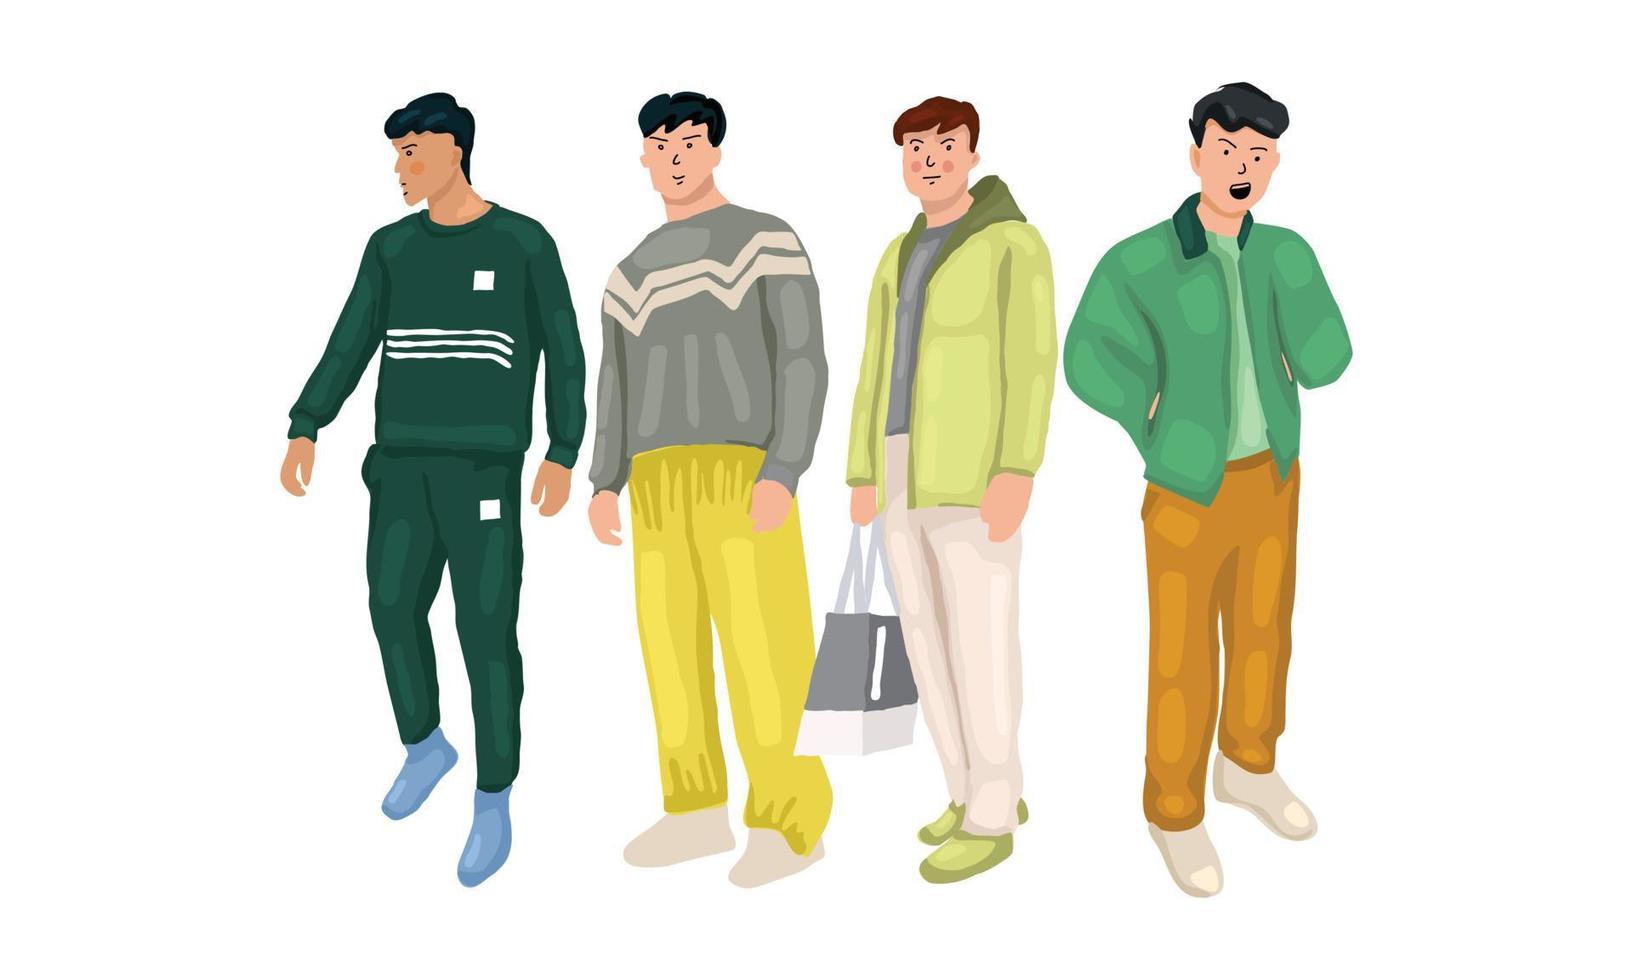 junge und seine freunde posieren in lässigem outfit in den farben mint, grün, matcha, farbenfroher stil vektor